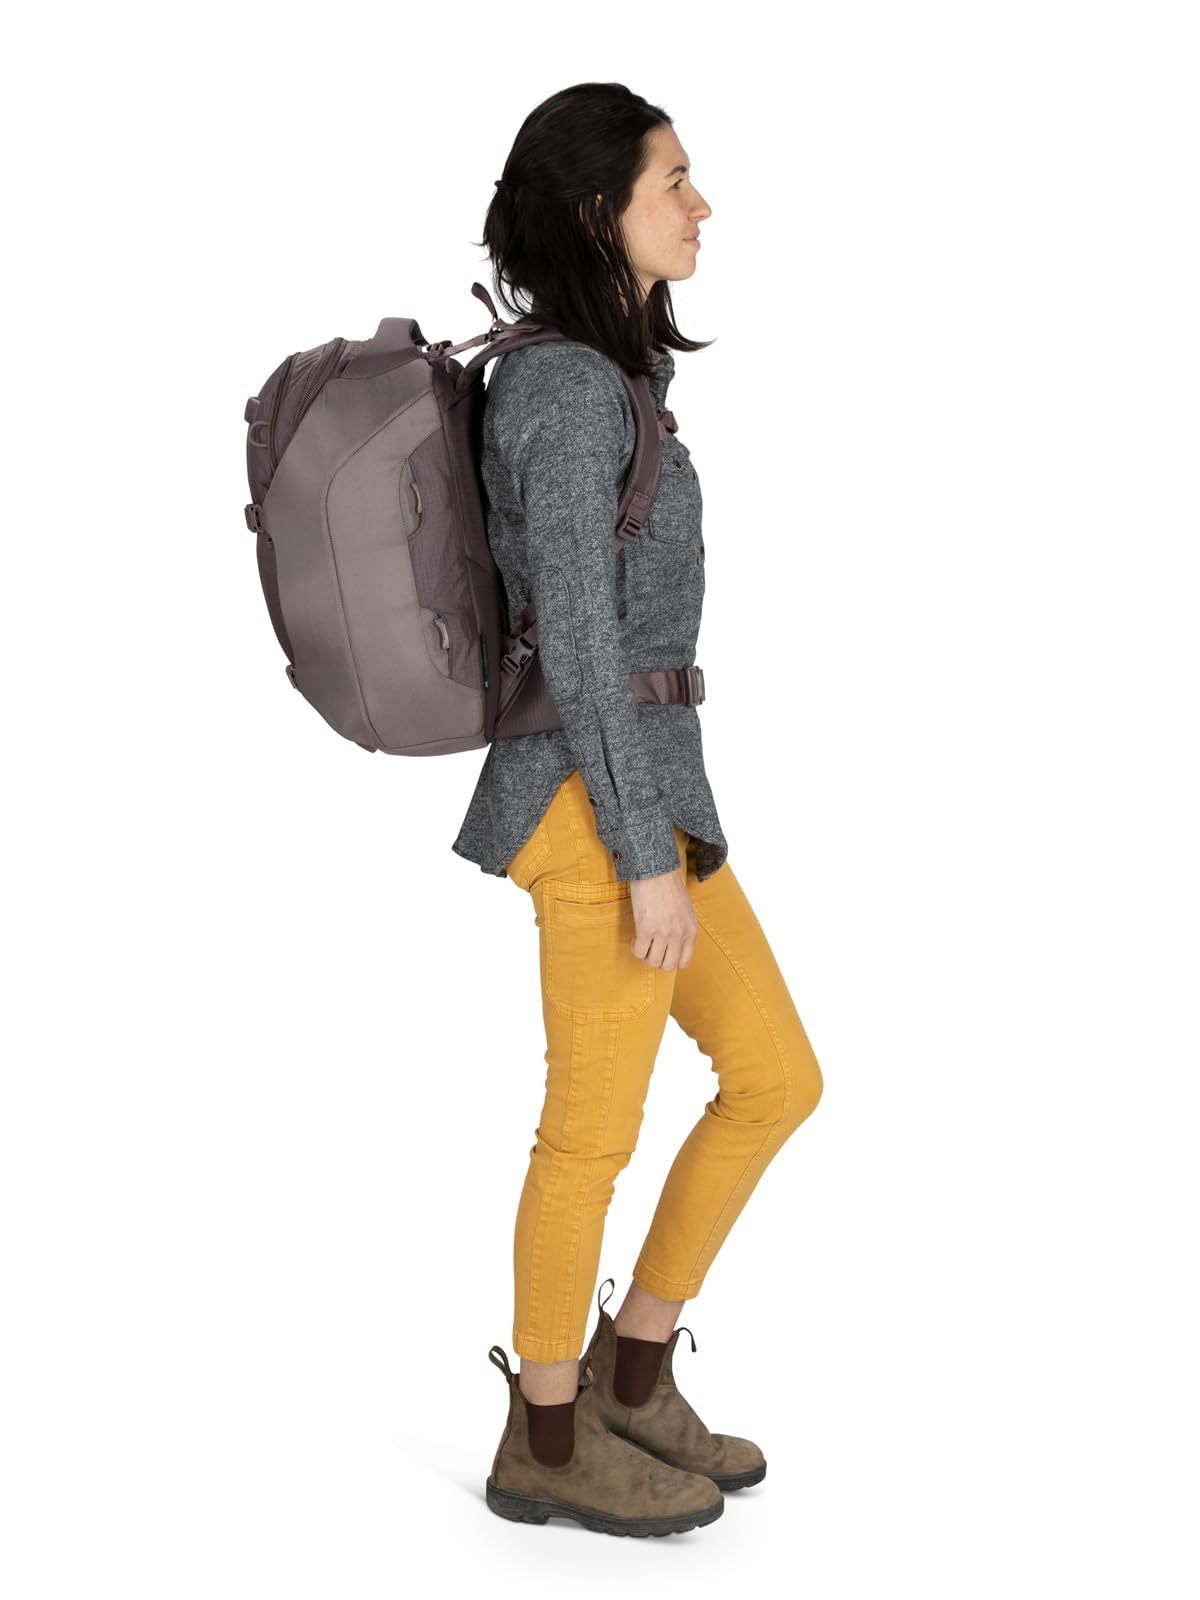 Osprey Sojourn Porter 30L Travel Backpack, Black, One Size